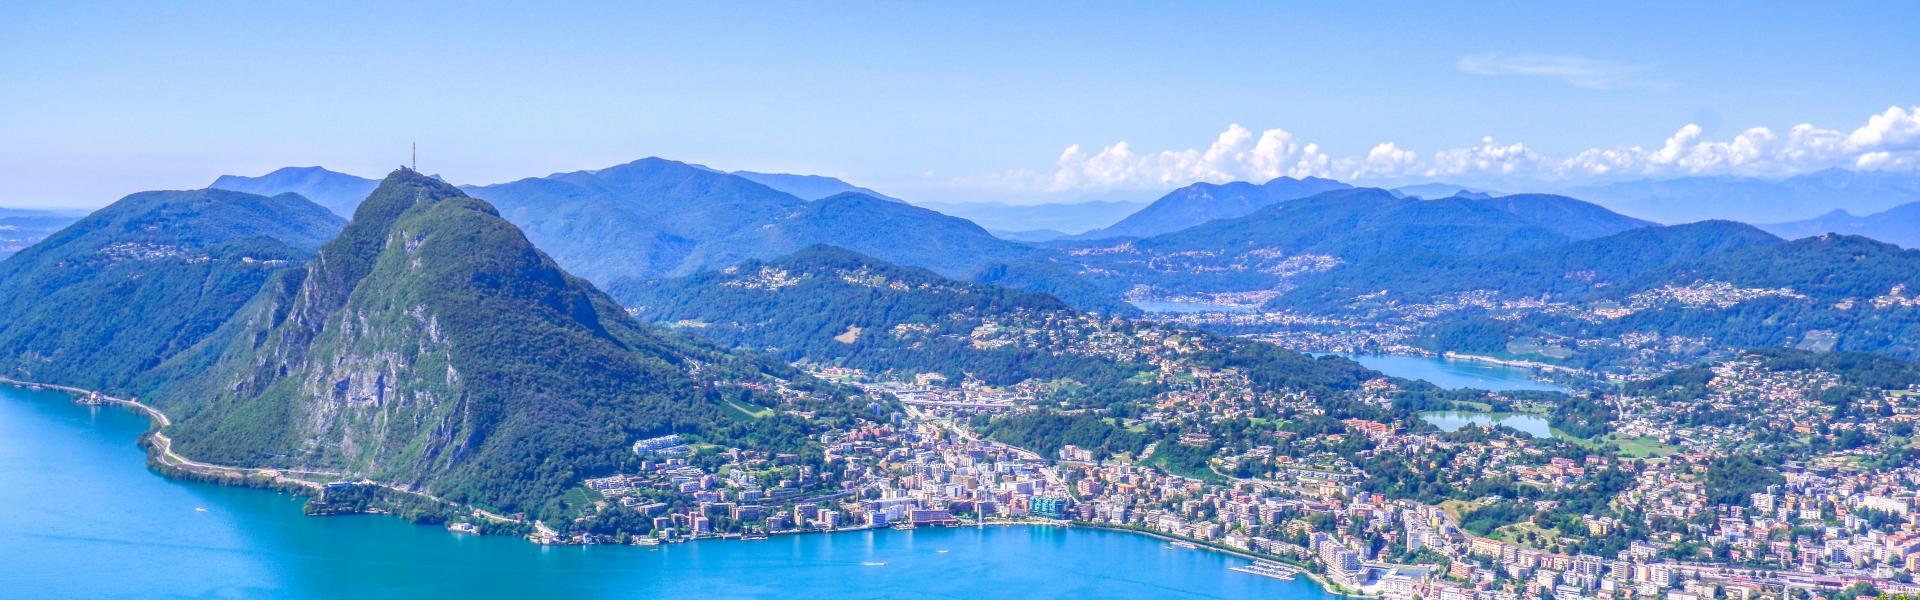 Lugano Scenic View